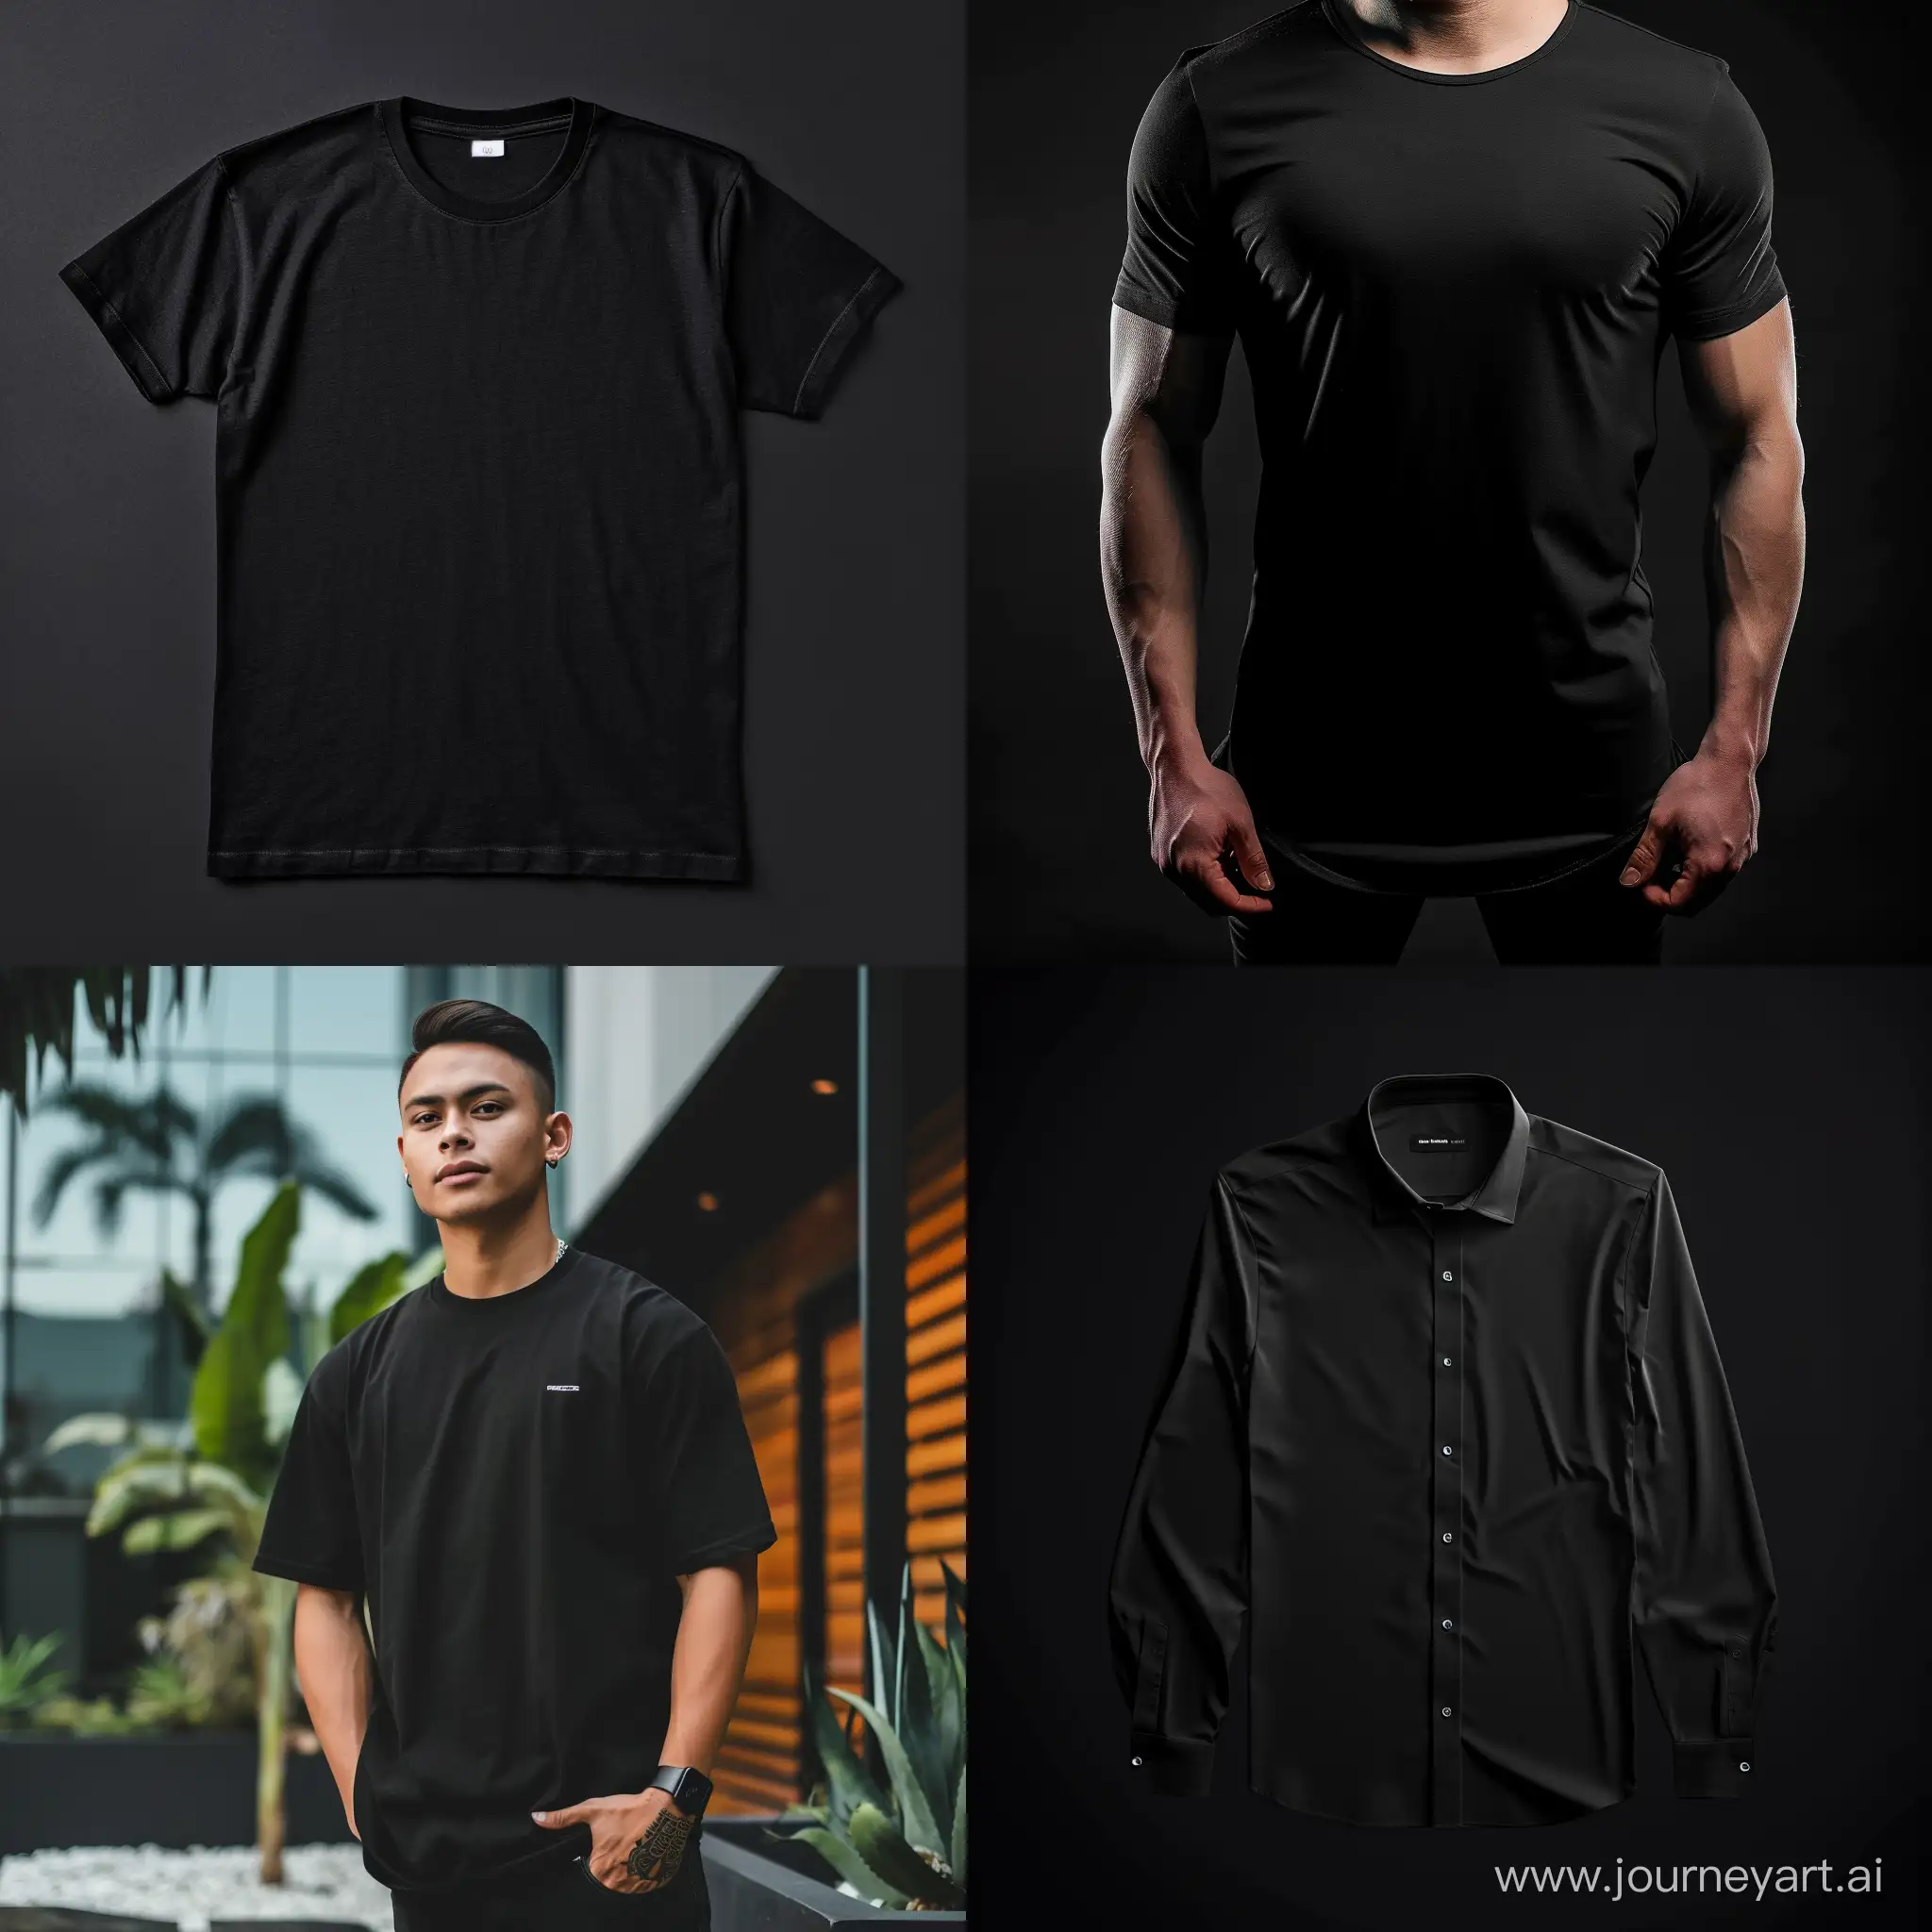 Stylish-Instagram-Shirt-Post-on-Black-Background